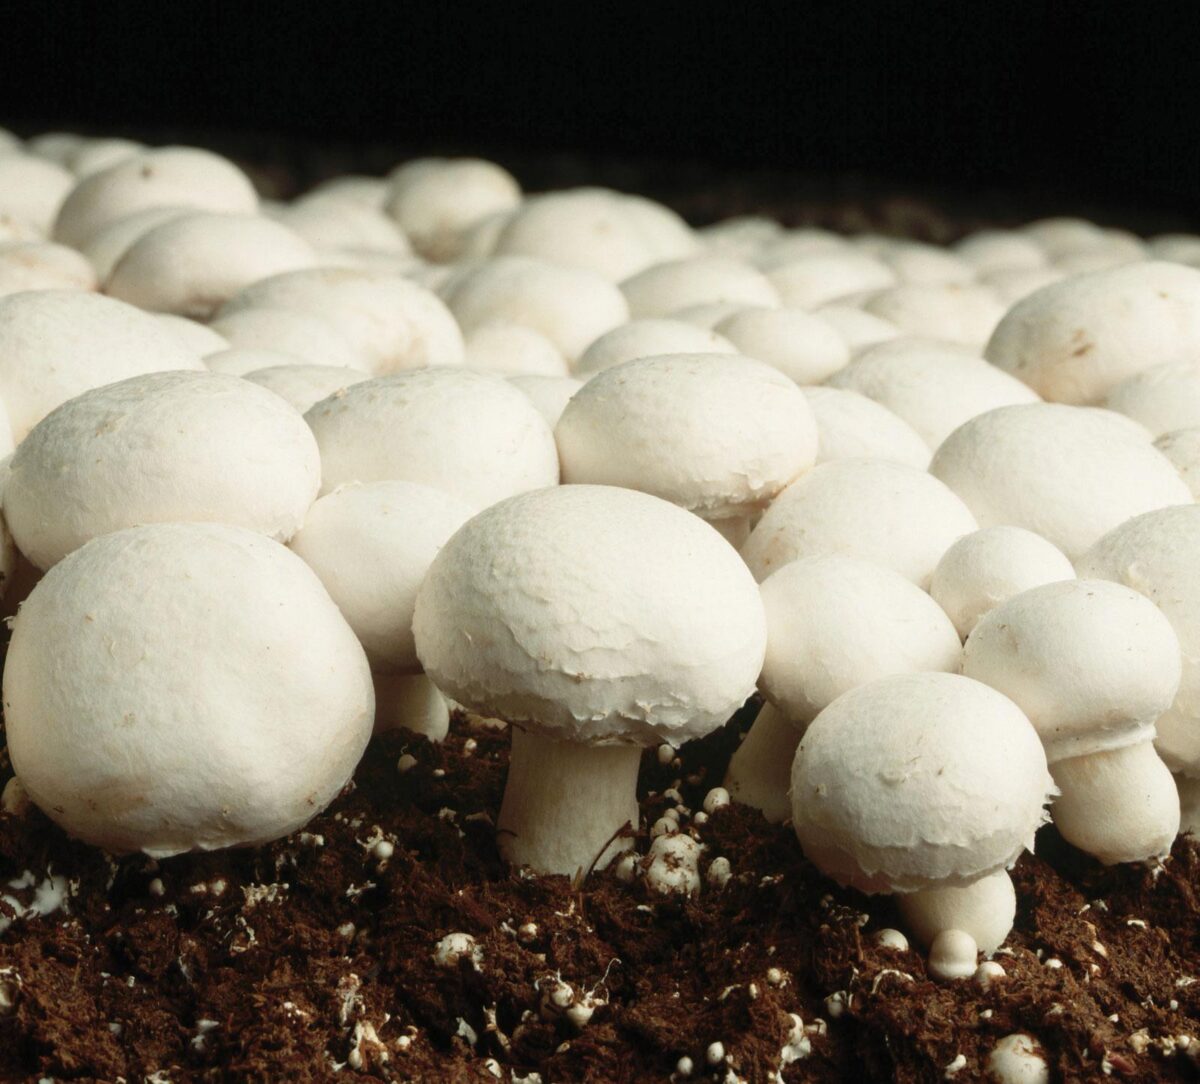 is a mushroom a producer